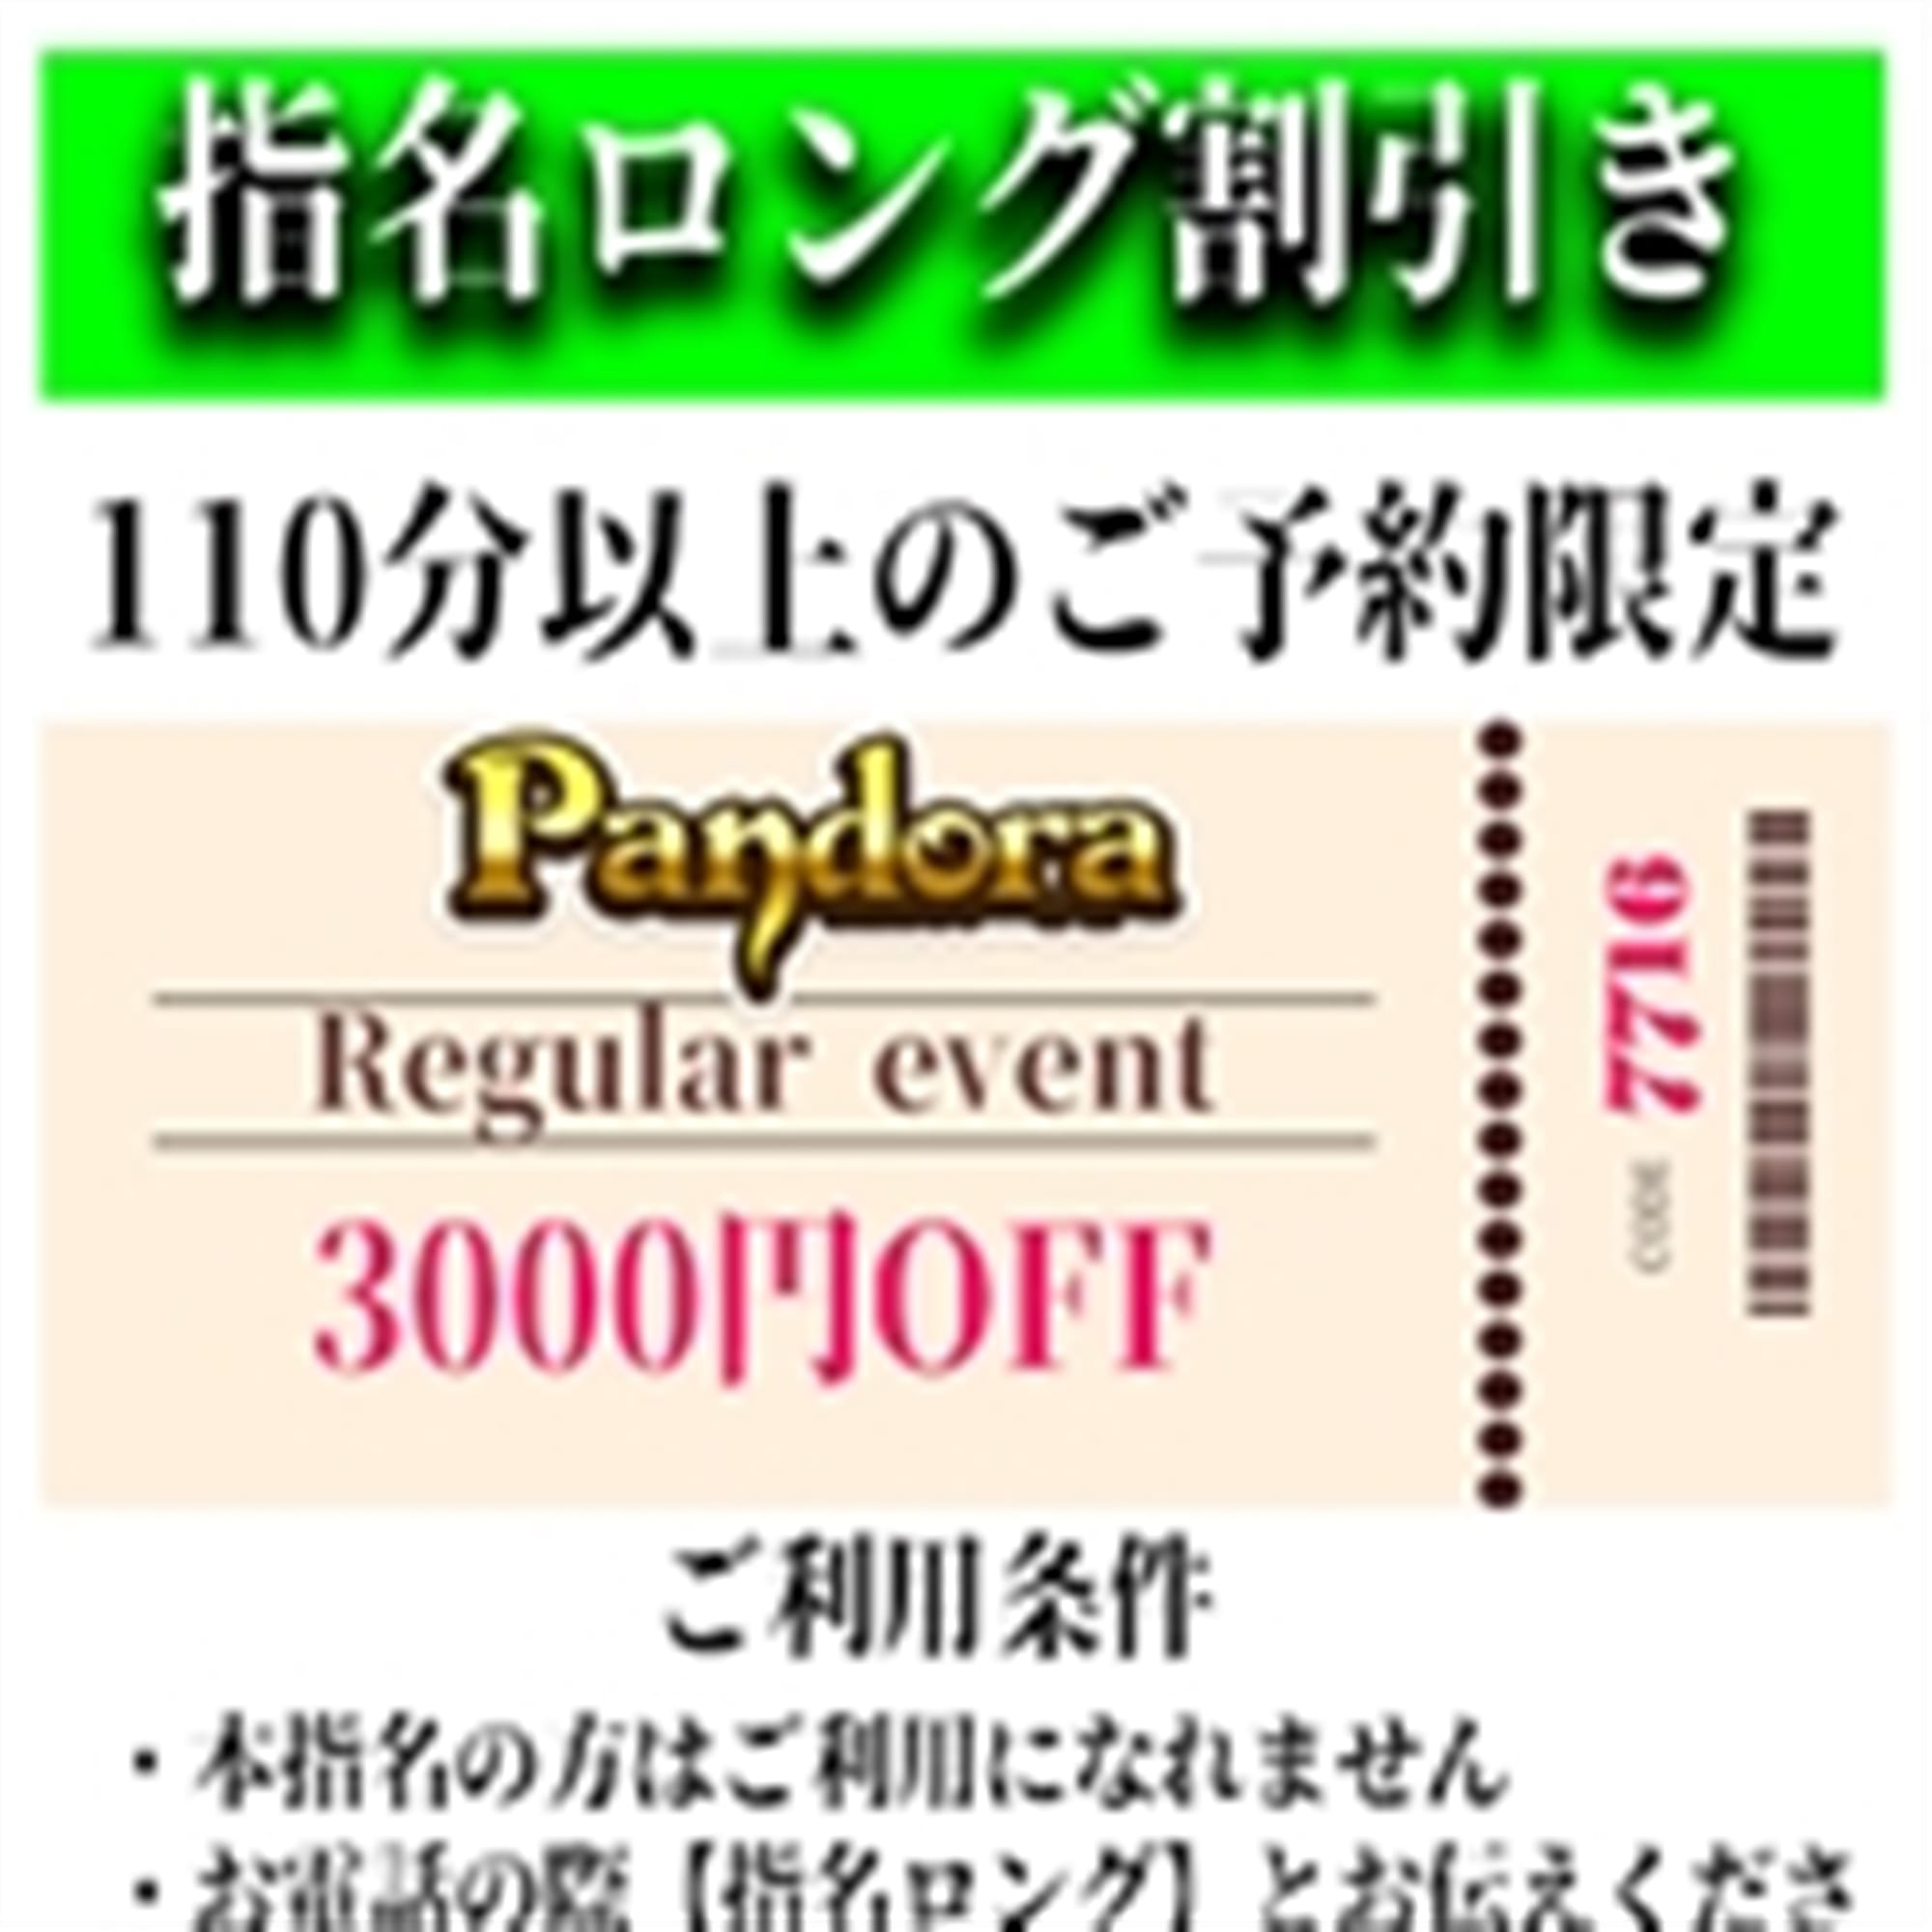 「ご指名のお客様も遊べるロングコース割引」04/25(木) 15:25 | Pandora(パンドラ)新潟のお得なニュース